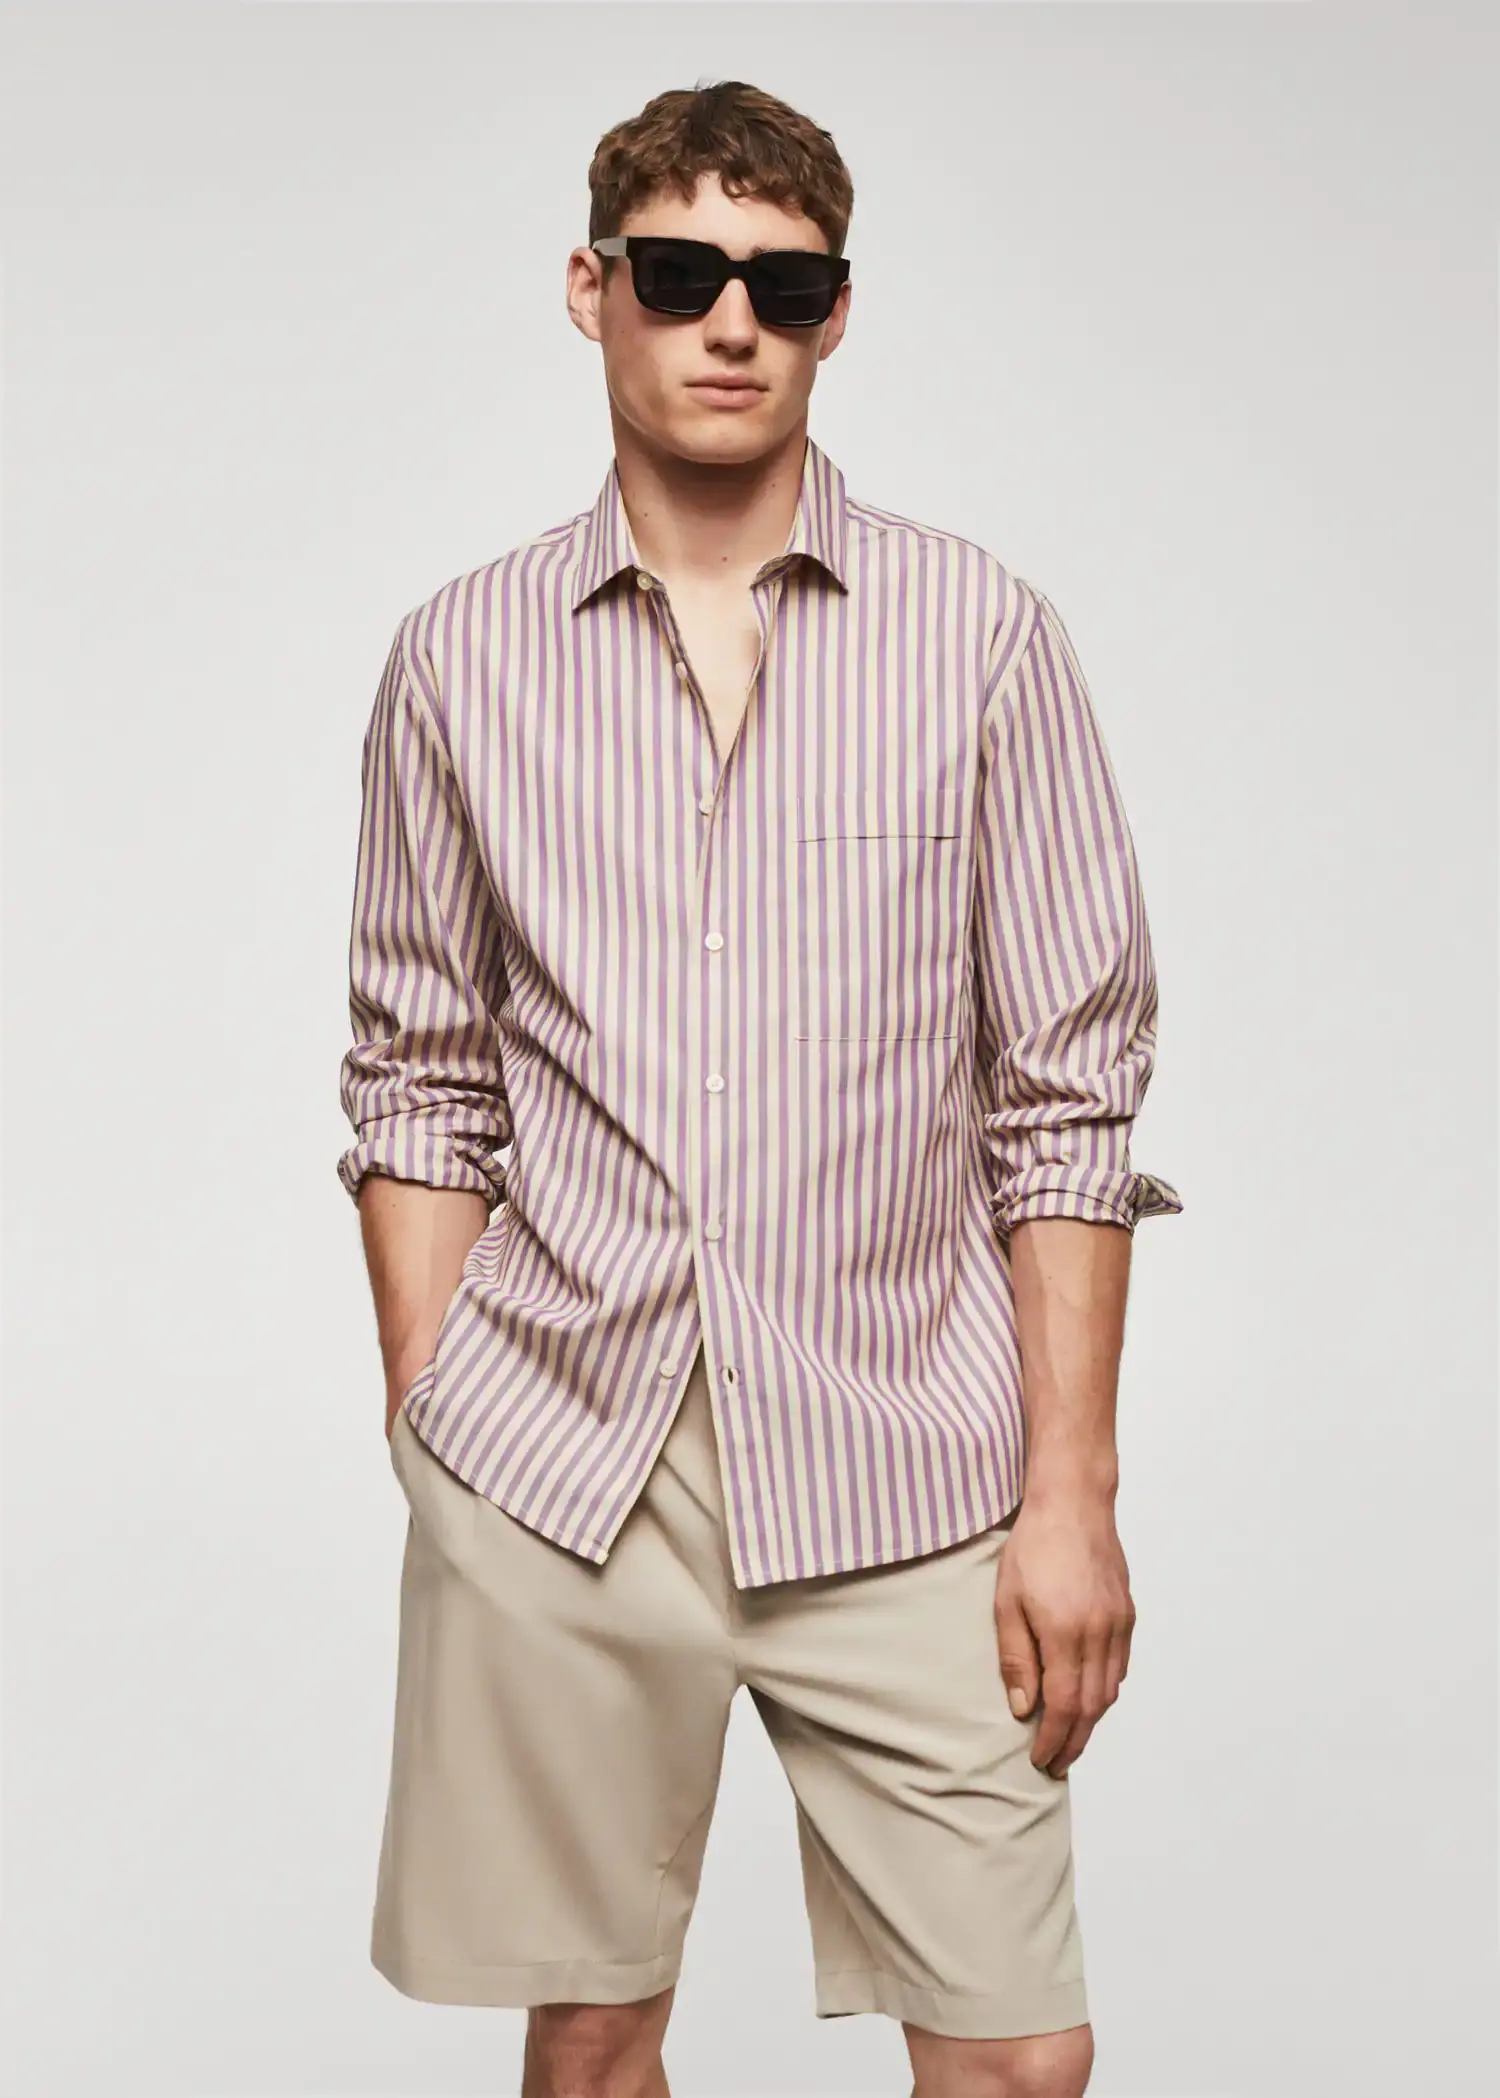 Mango 100% cotton Kodak striped shirt . a man wearing sunglasses and a striped shirt. 